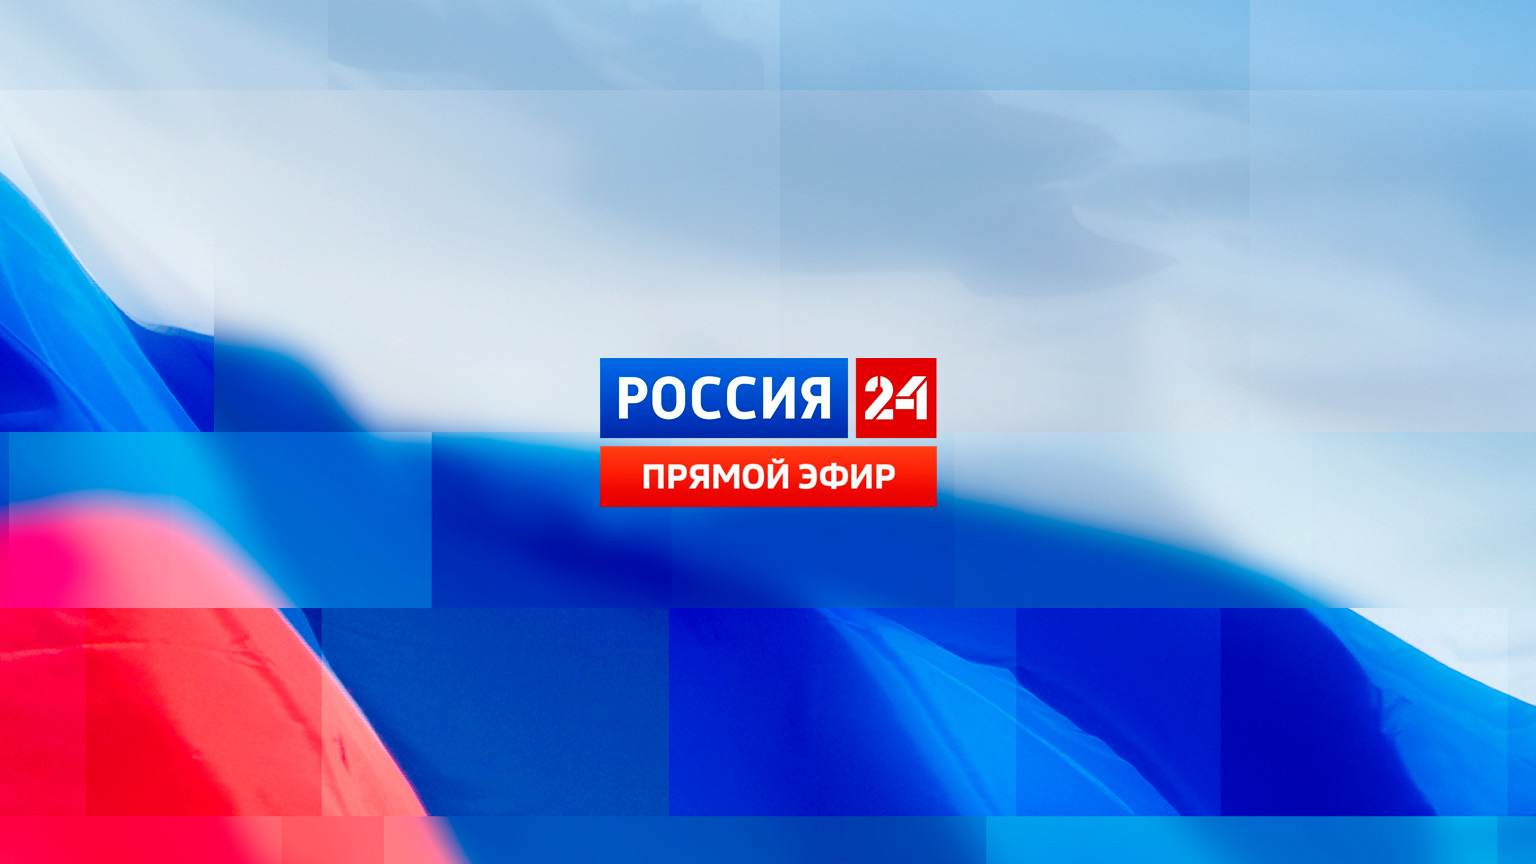 Россия 24 прямой эфир_промобаннер